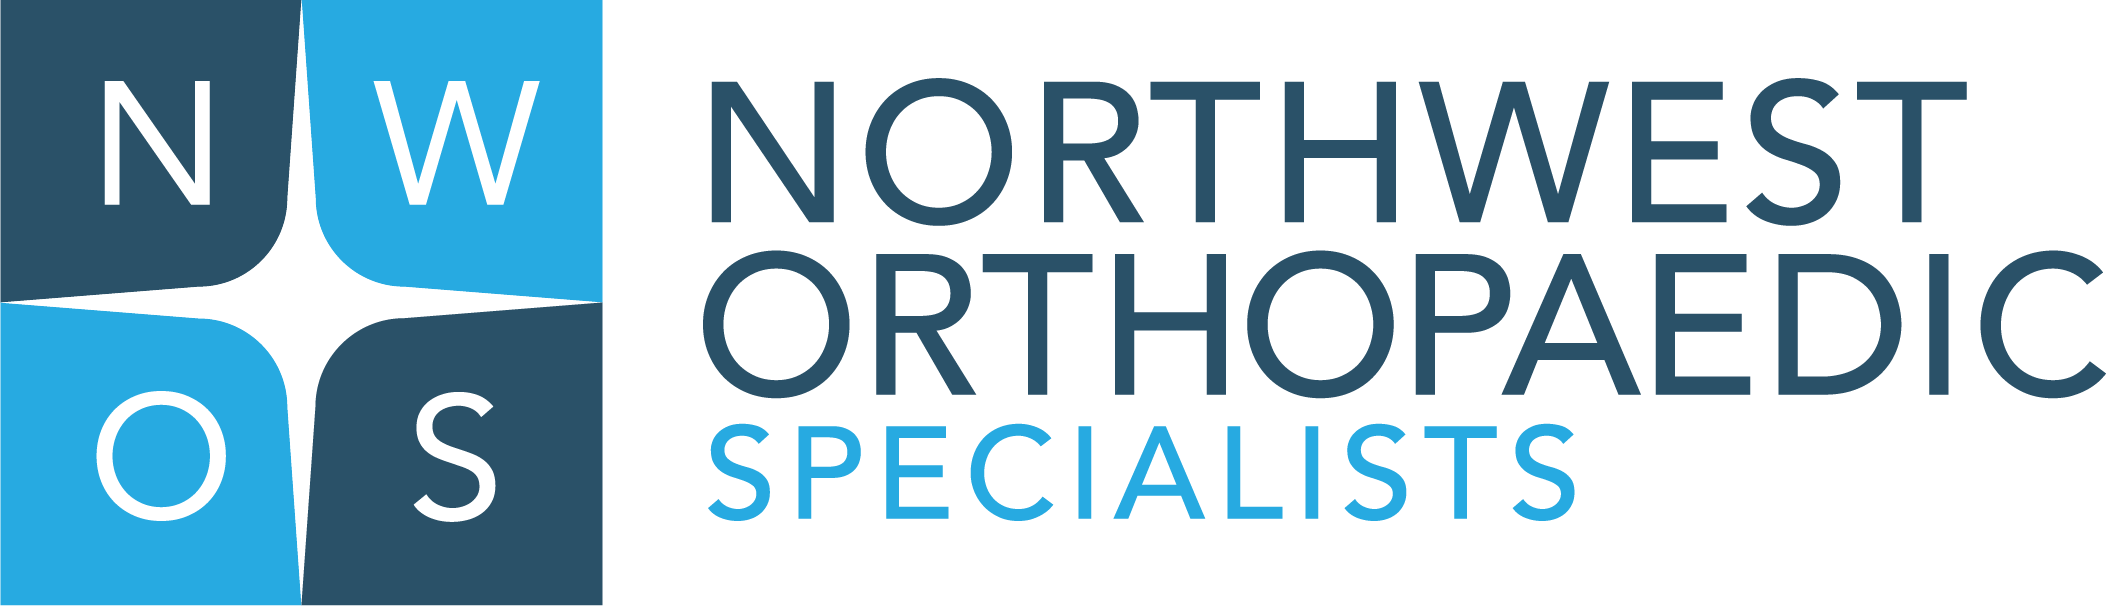 Northwest Orthopedic Specialists Logo